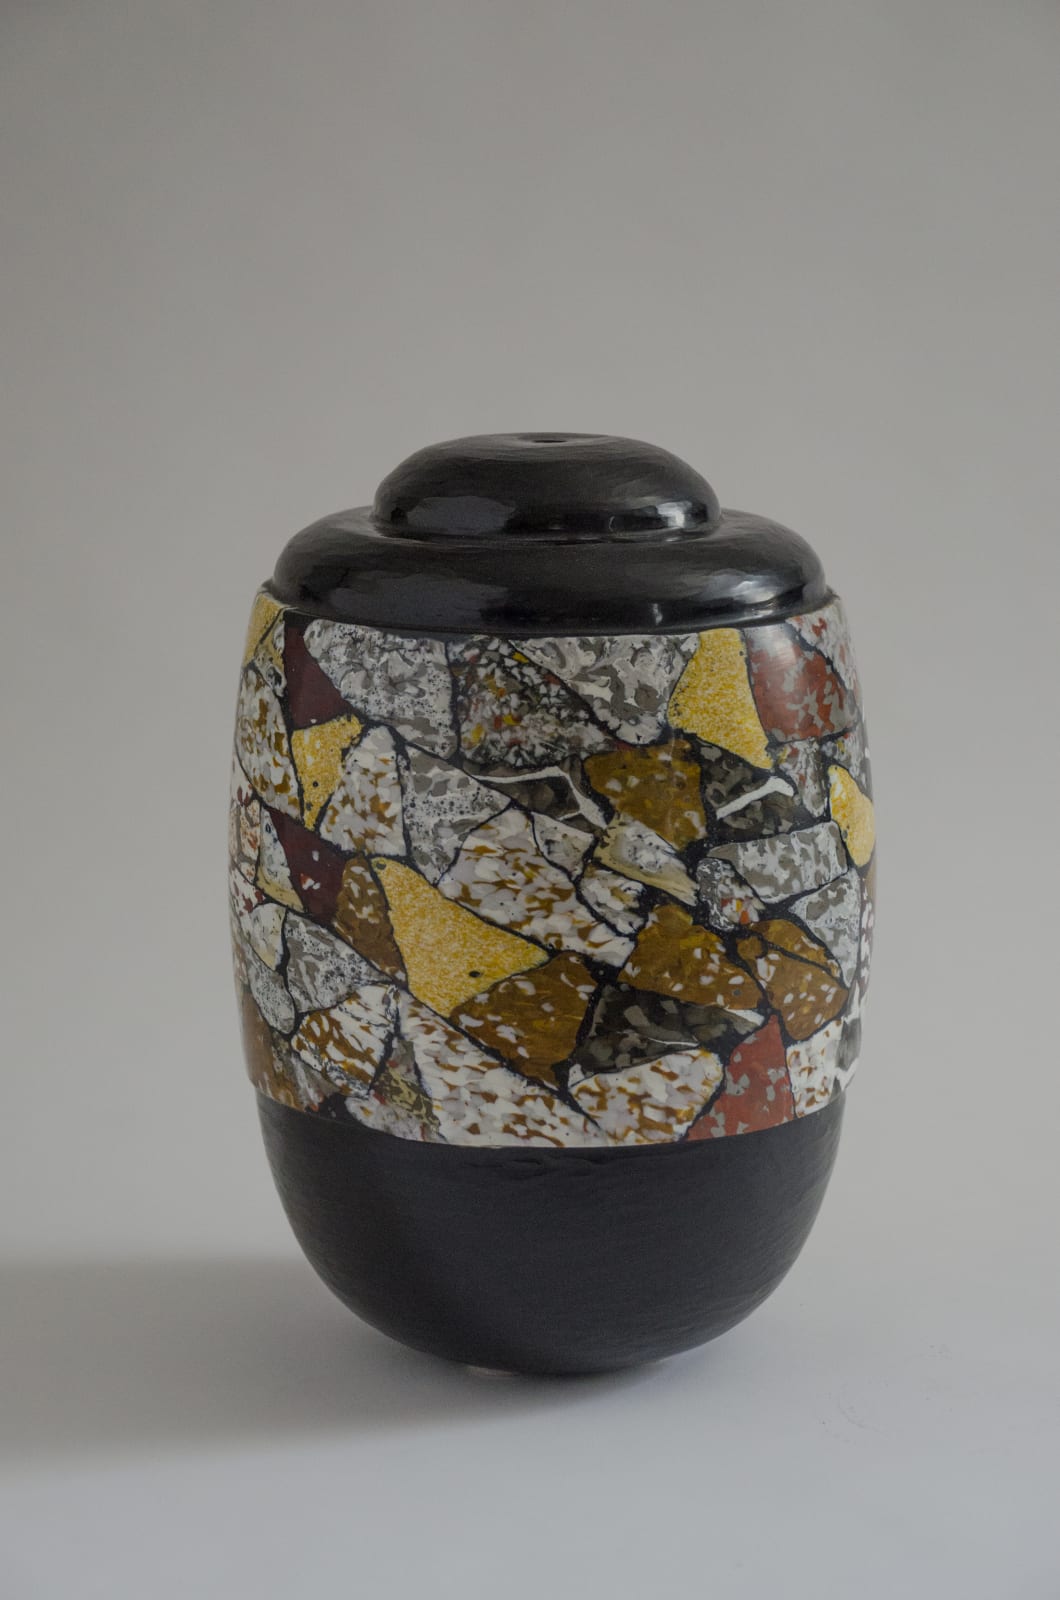 Massimo Micheluzzi, Black & Multicolored Vase, 2013